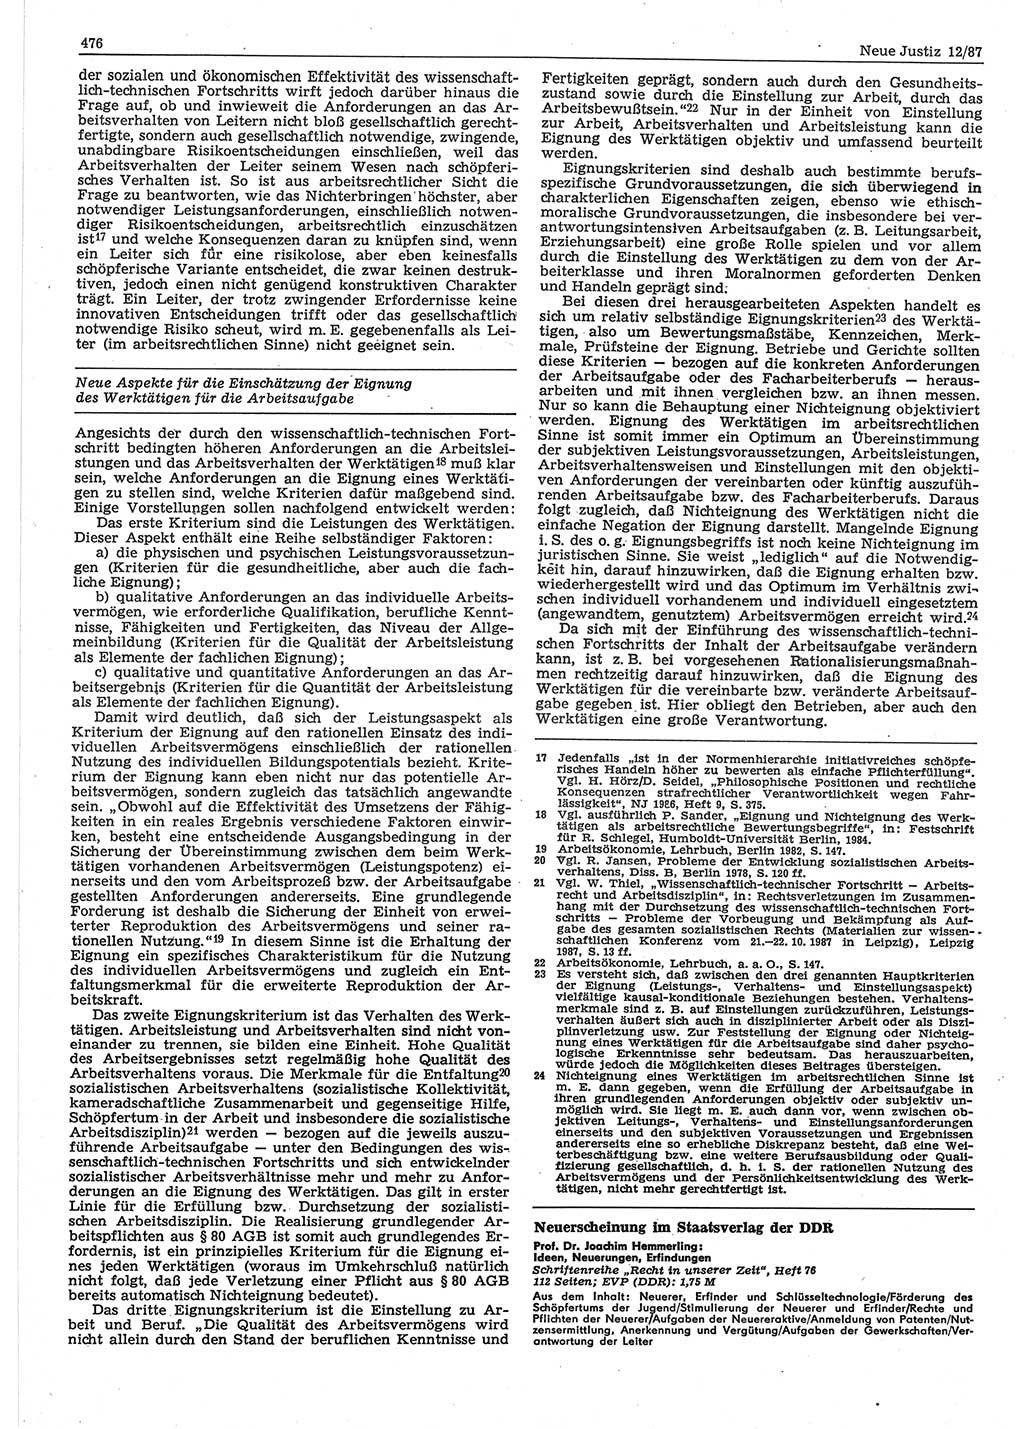 Neue Justiz (NJ), Zeitschrift für sozialistisches Recht und Gesetzlichkeit [Deutsche Demokratische Republik (DDR)], 41. Jahrgang 1987, Seite 476 (NJ DDR 1987, S. 476)